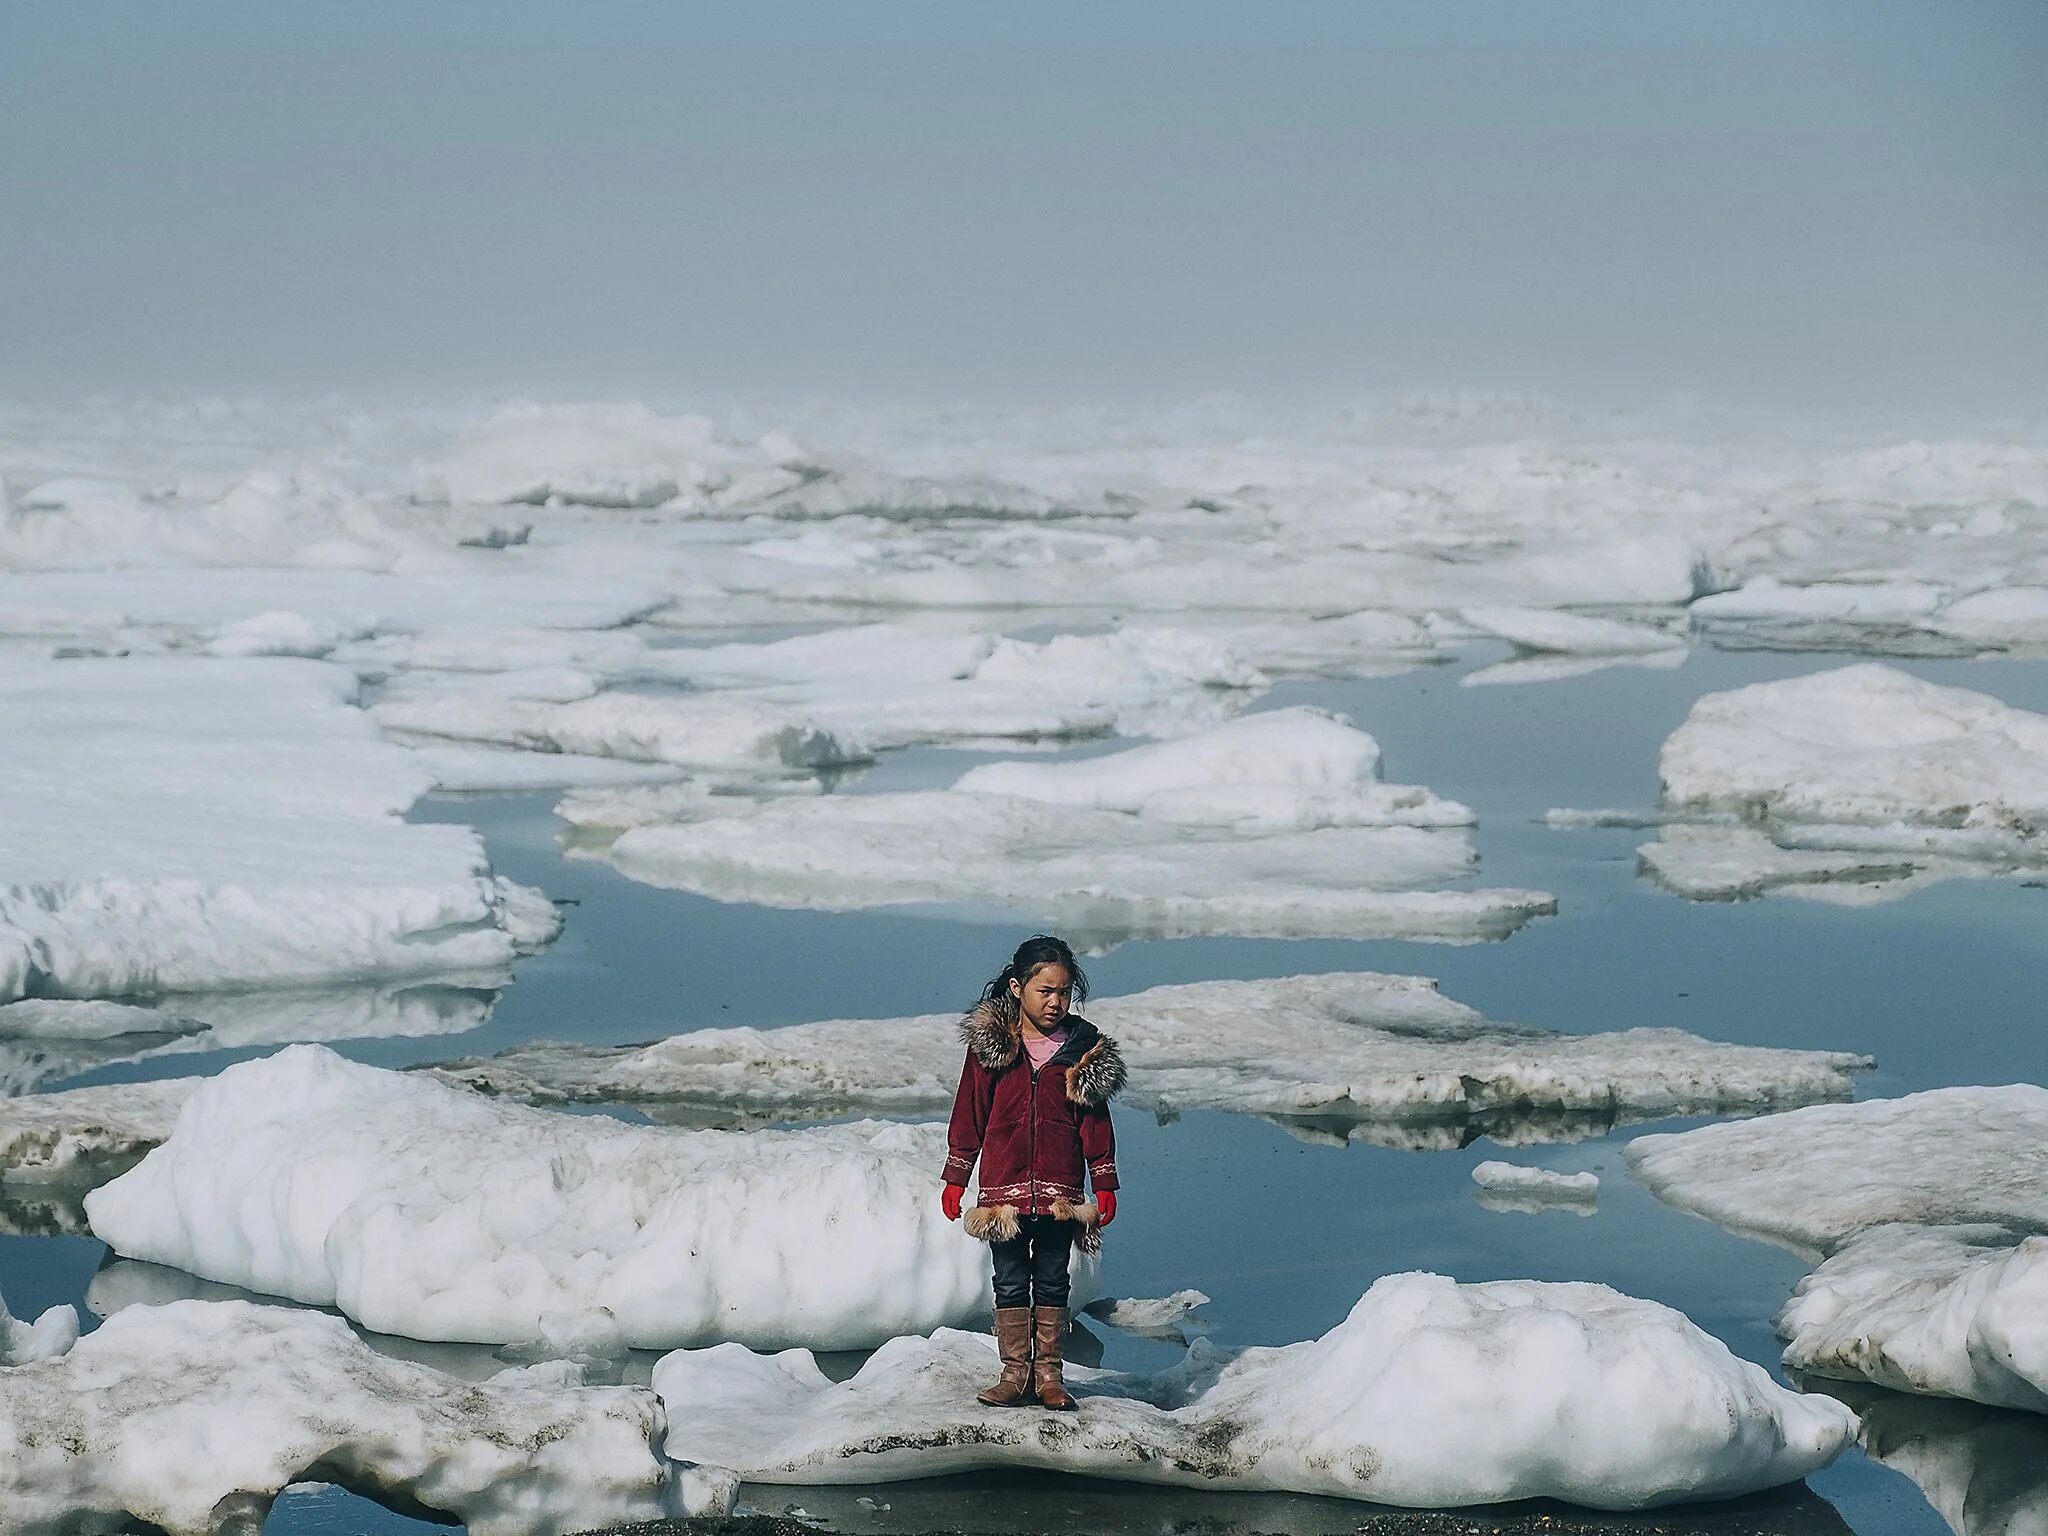 Говори потепление. Уткиагвик Аляска. Северный Ледовитый океан Аляска. Глобальное потепление Северного Ледовитого океана. Таяние льдов в Арктике.